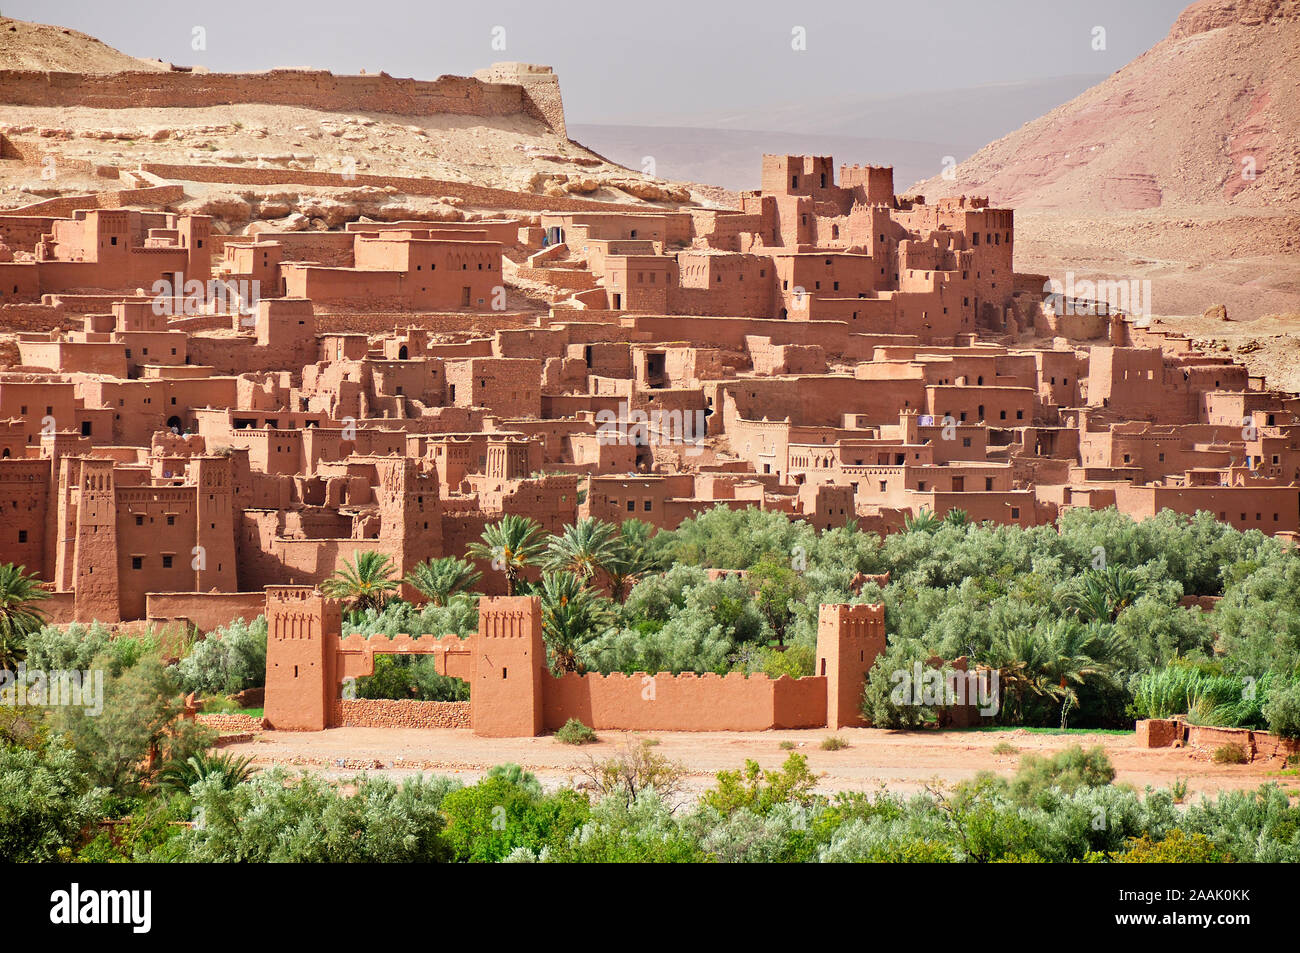 La storica città fortificata del deserto (ksar) di Ait Benhaddou tra il deserto del Sahara e Marrakech. Un sito patrimonio mondiale dell'UNESCO, il Marocco Foto Stock